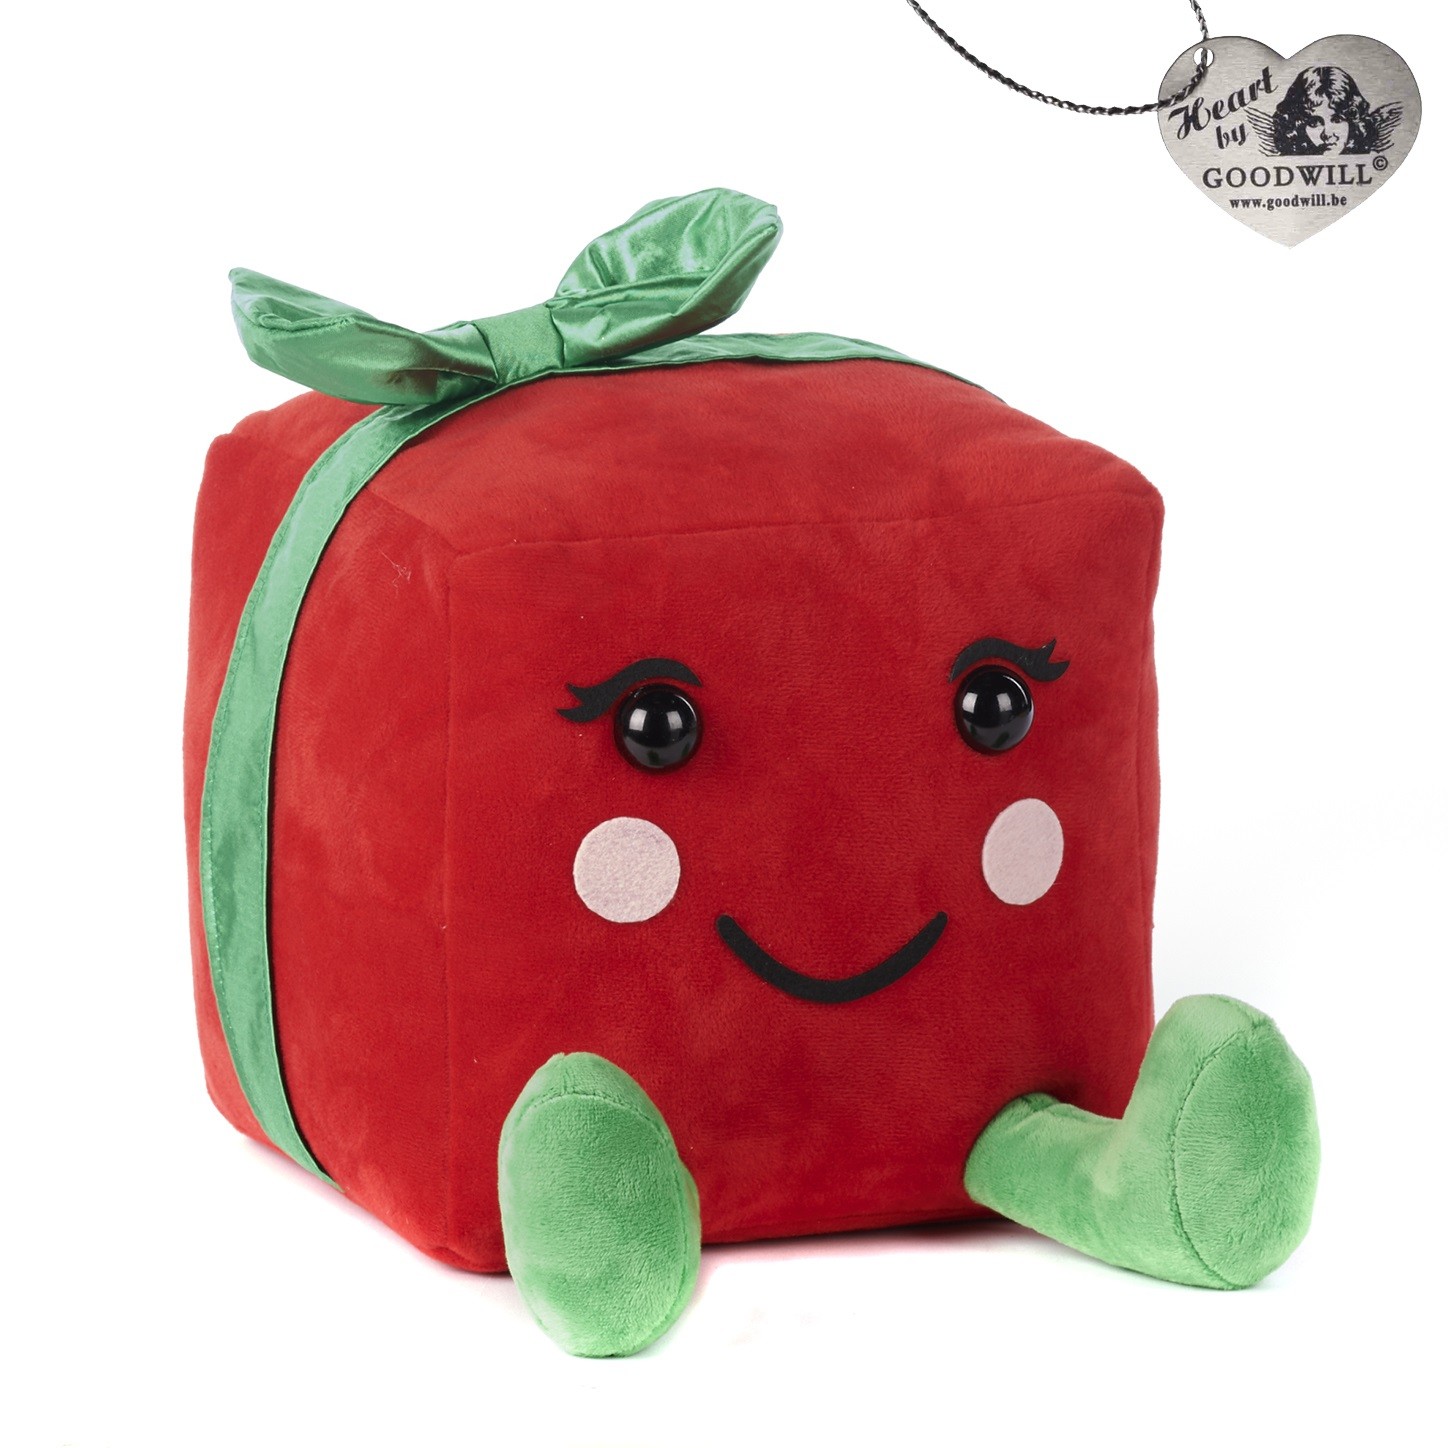 Pacco regalo in peluche rosso e verde - H. 30.5 cm - Goodwill